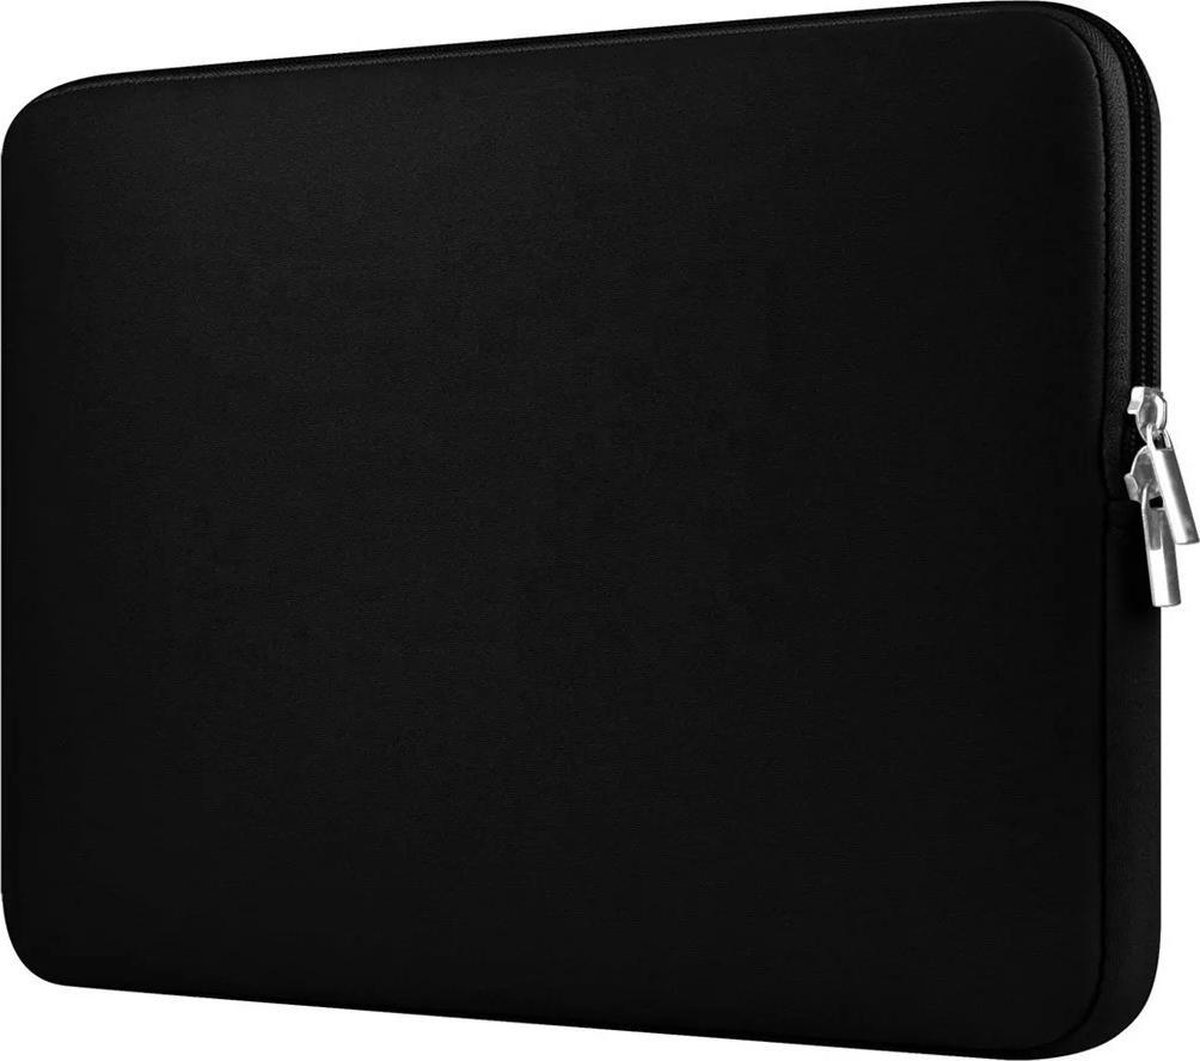 Spatwaterdichte laptopsleeve – 16 inch- dubbele ritssluiting- zwart kleur - unisex - Foam - Universeel